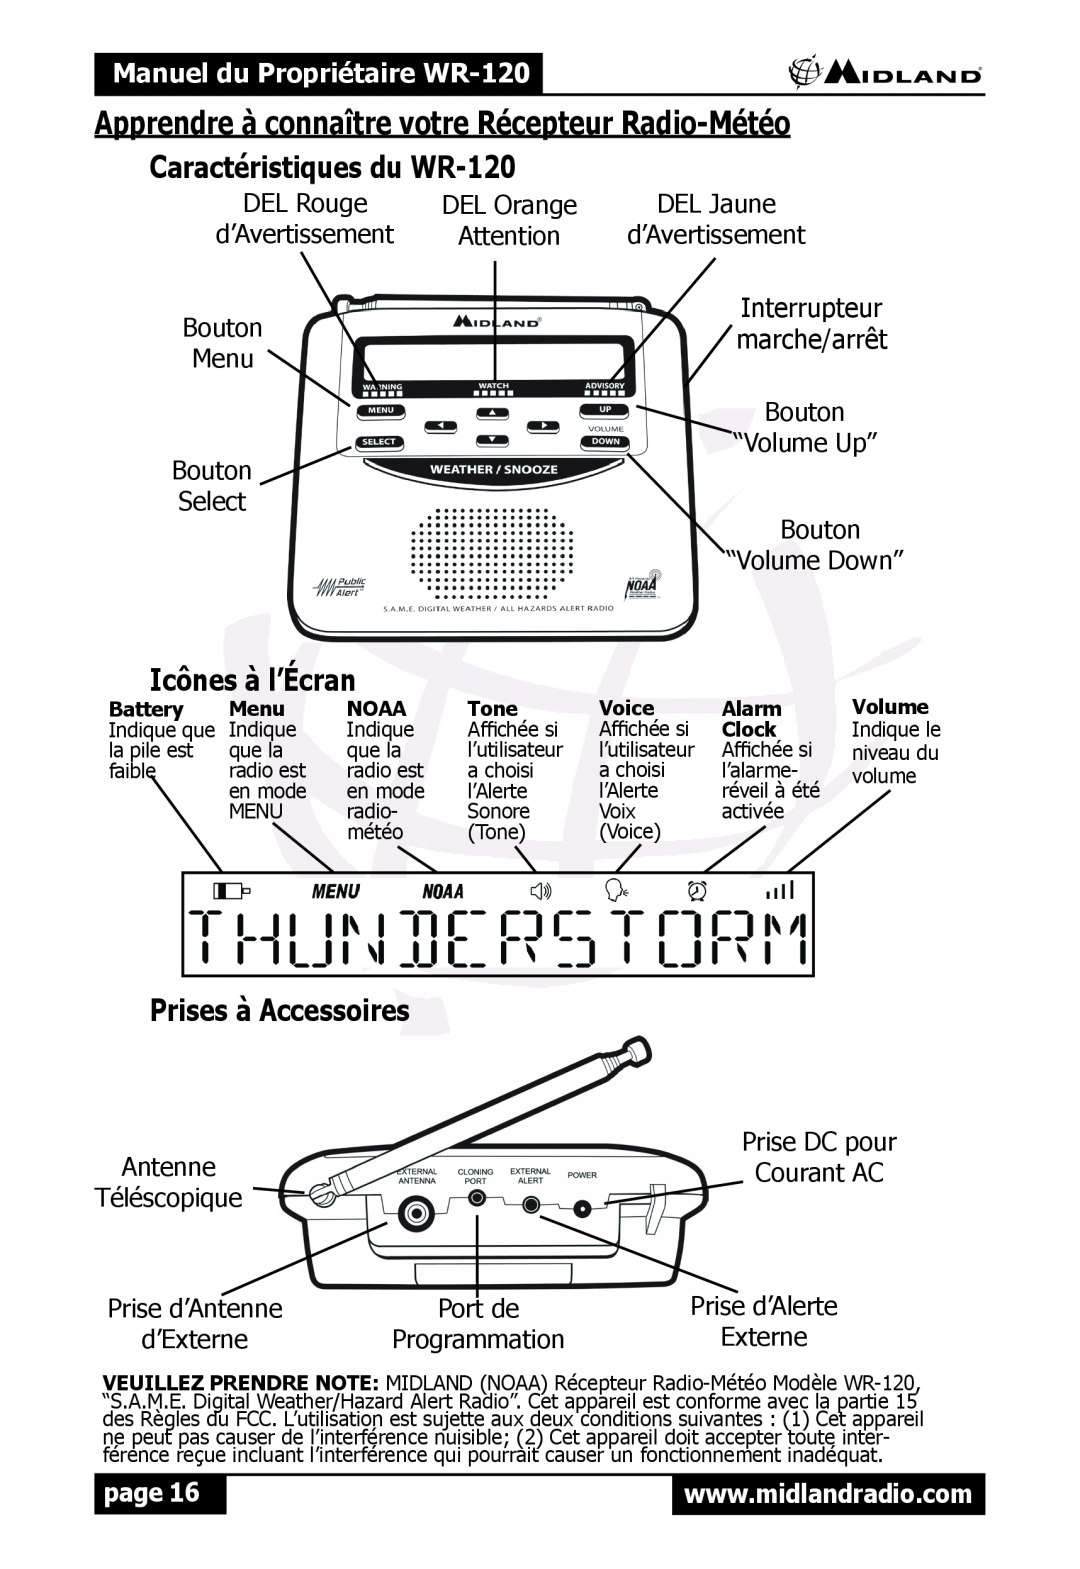 Midland Radio WR120 Apprendre à connaître votre Récepteur Radio-Météo, Caractéristiques du WR-120, Icônes à l’Écran, page 